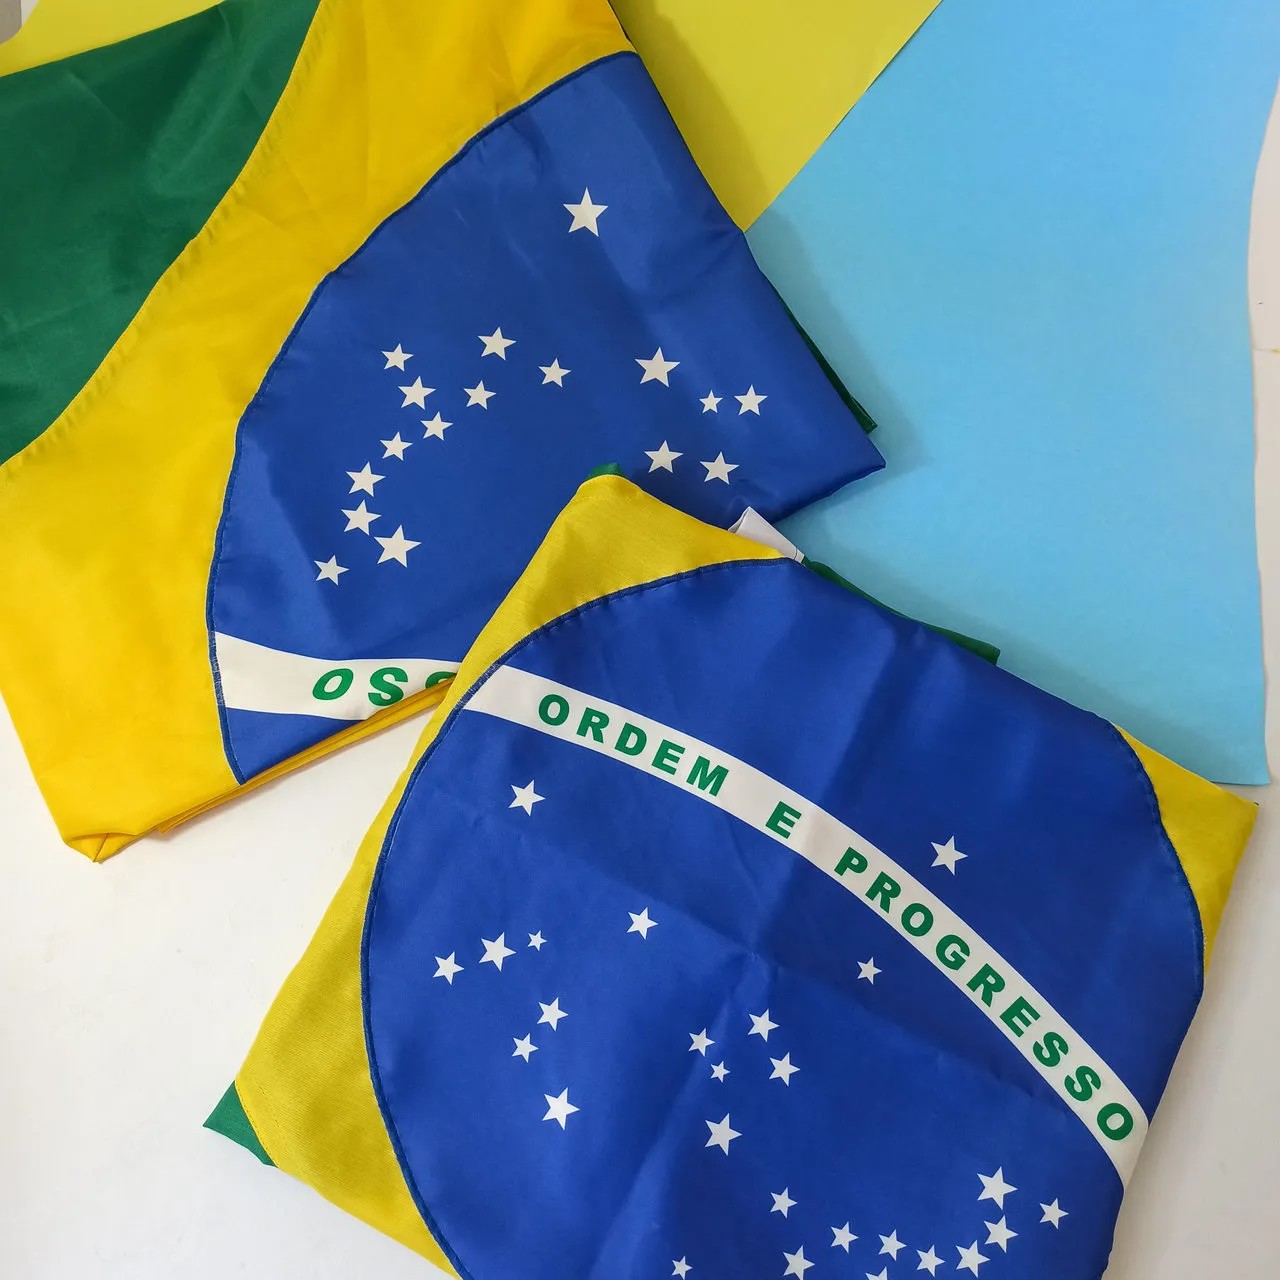 Tecido Bandeira do Brasil Completa